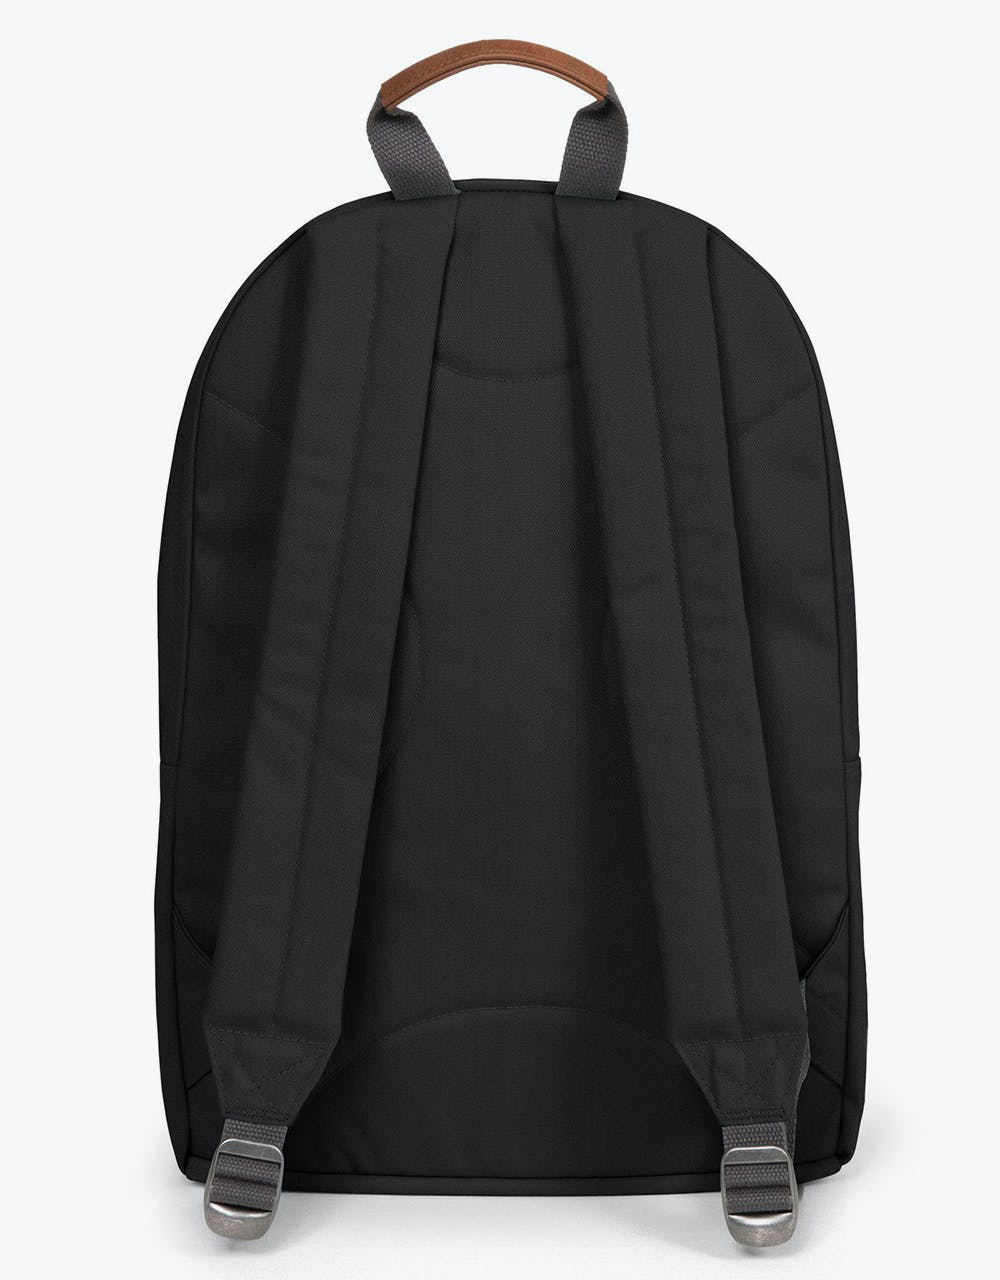 Eastpak Back To Work Backpack - Opgrade Black